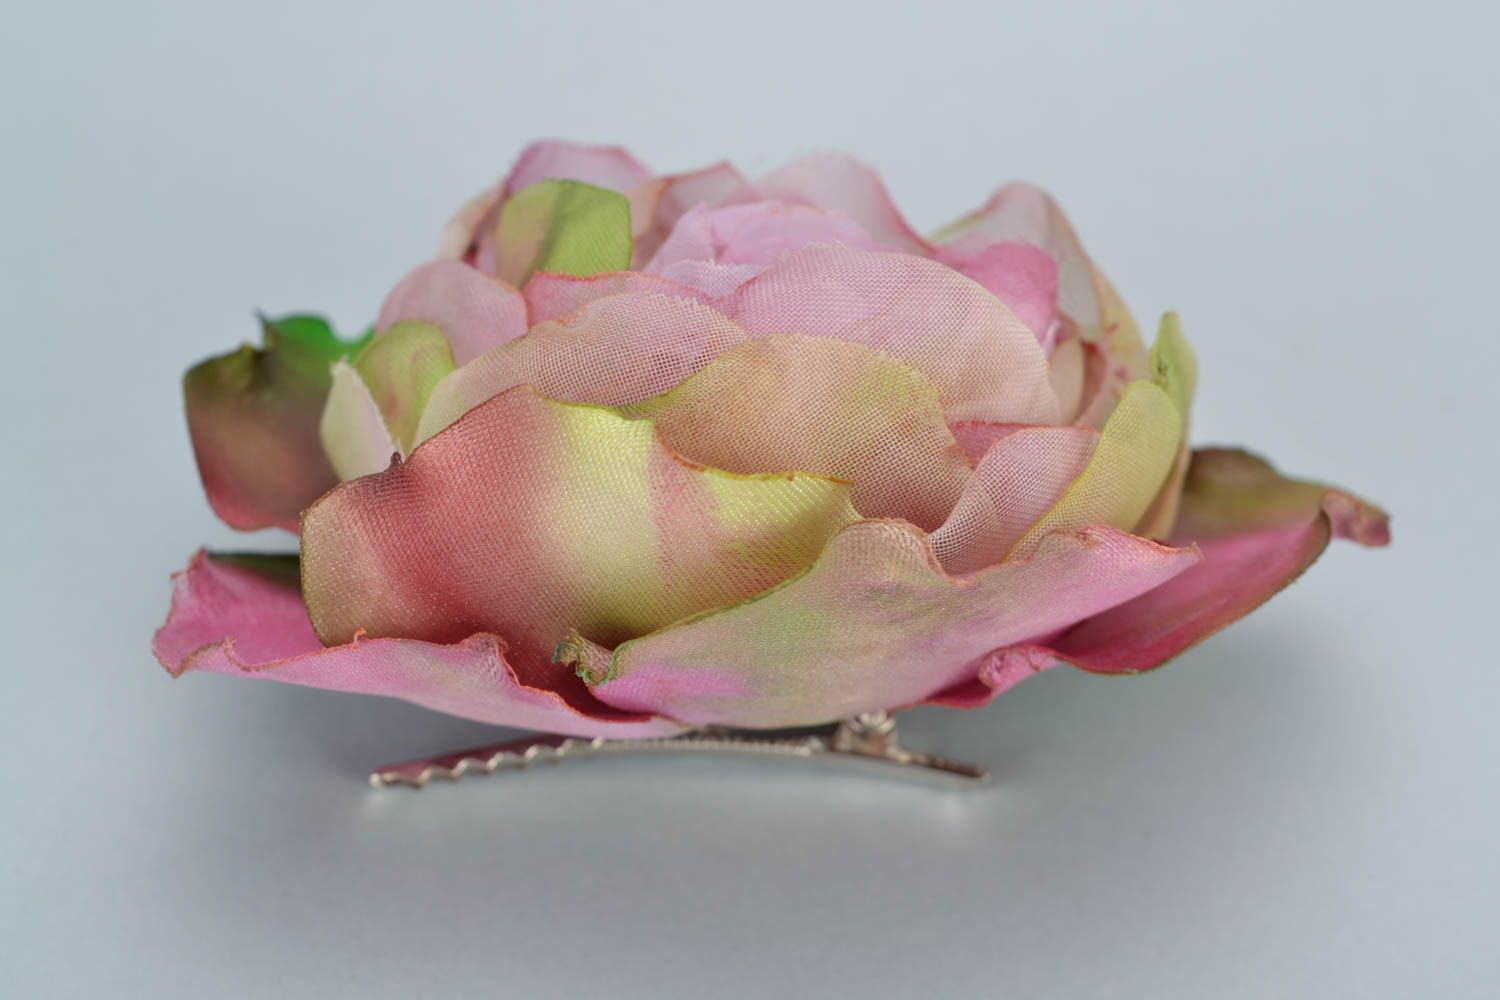 Цветок для волос из органзы и шелка розовый с переливами в технике батик фото 5